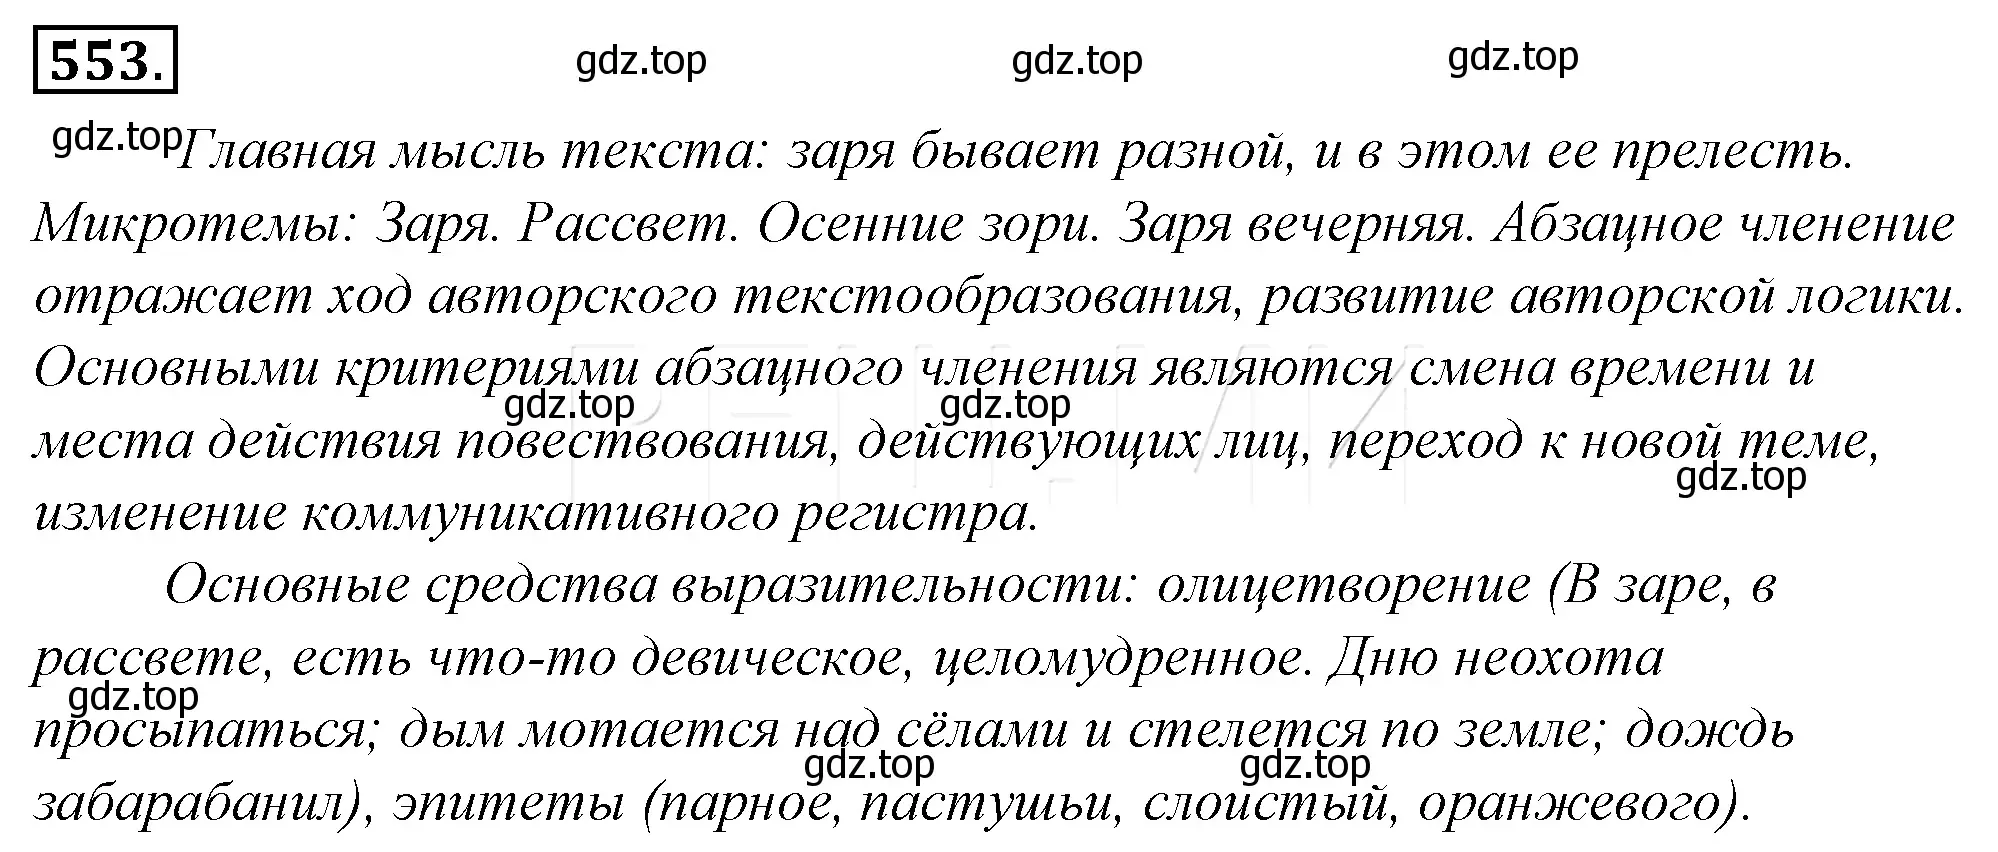 Решение 4. номер 229 (страница 313) гдз по русскому языку 10-11 класс Гольцова, Шамшин, учебник 2 часть